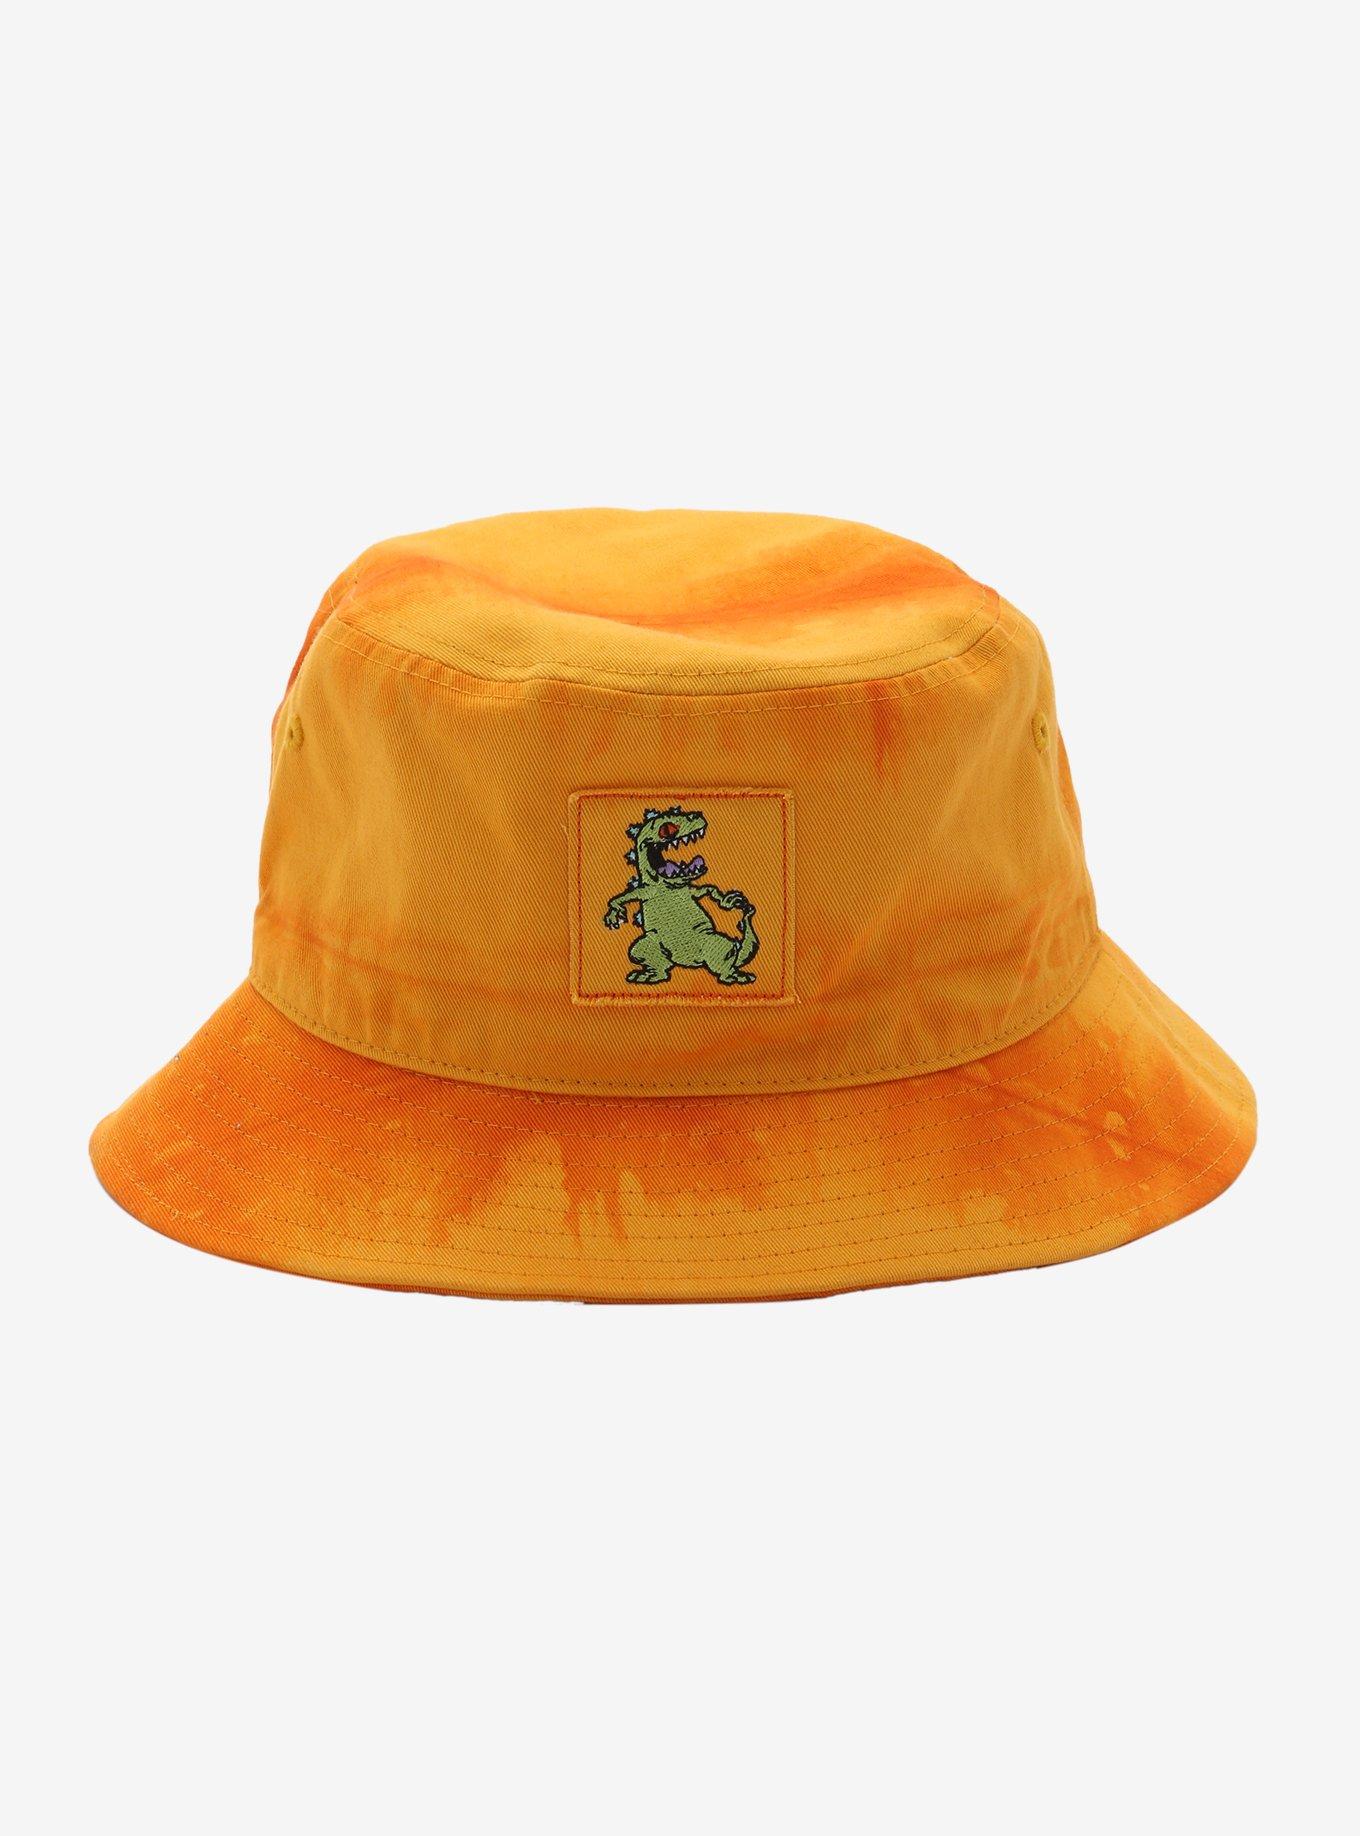 Rugrats Reptar Tie-Dye Bucket Hat | Hot Topic